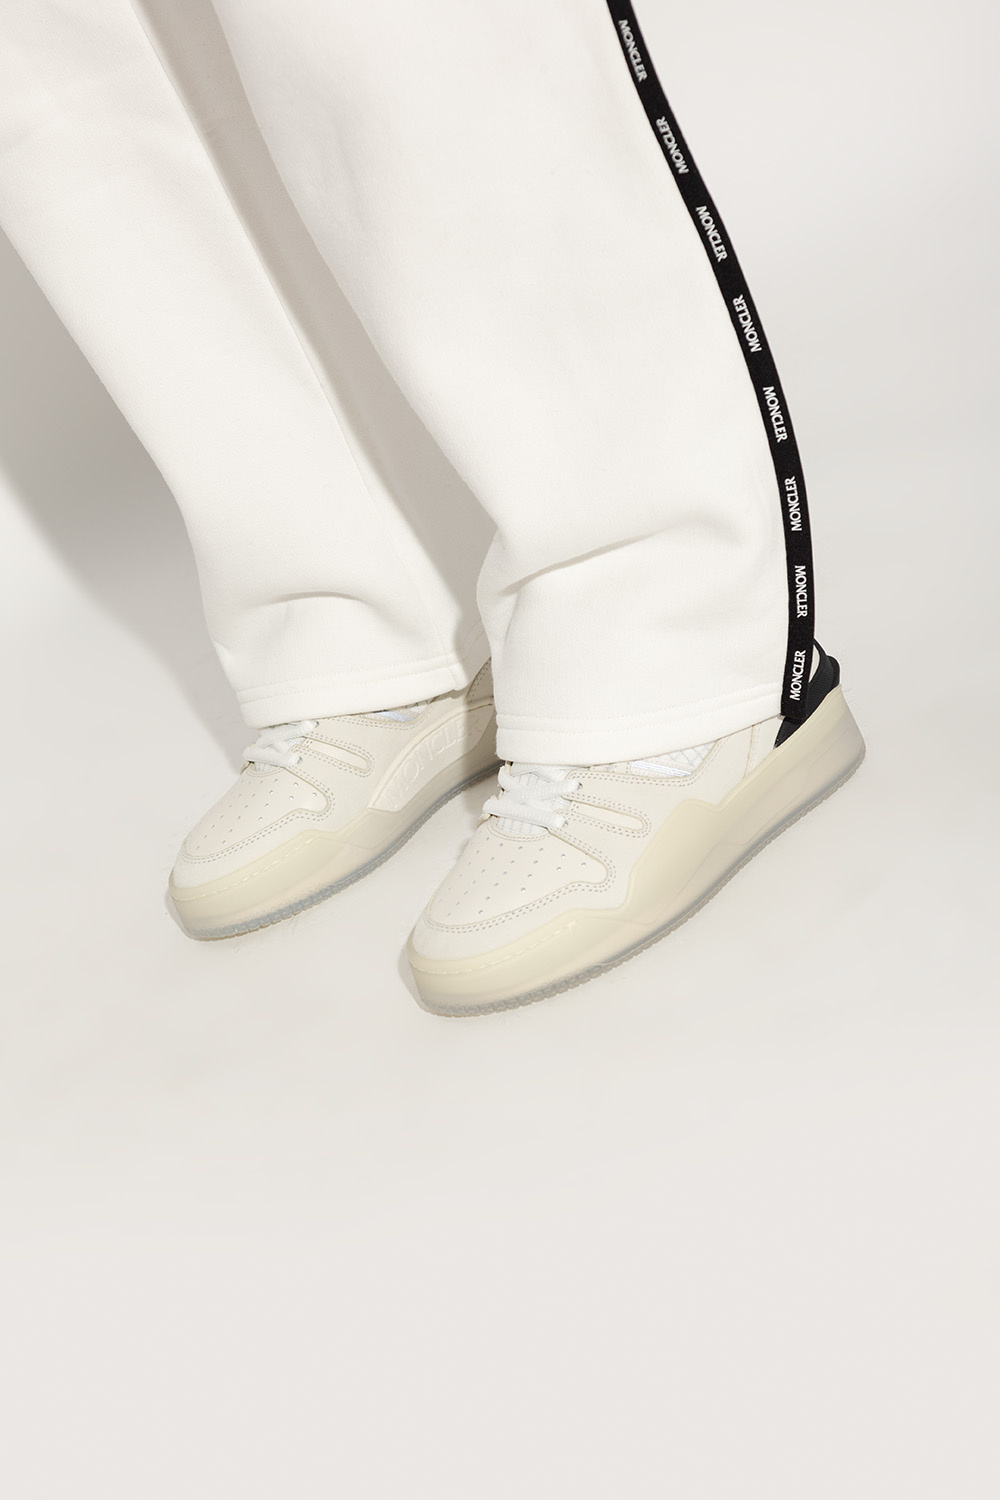 Moncler ‘Pivot’ sneakers